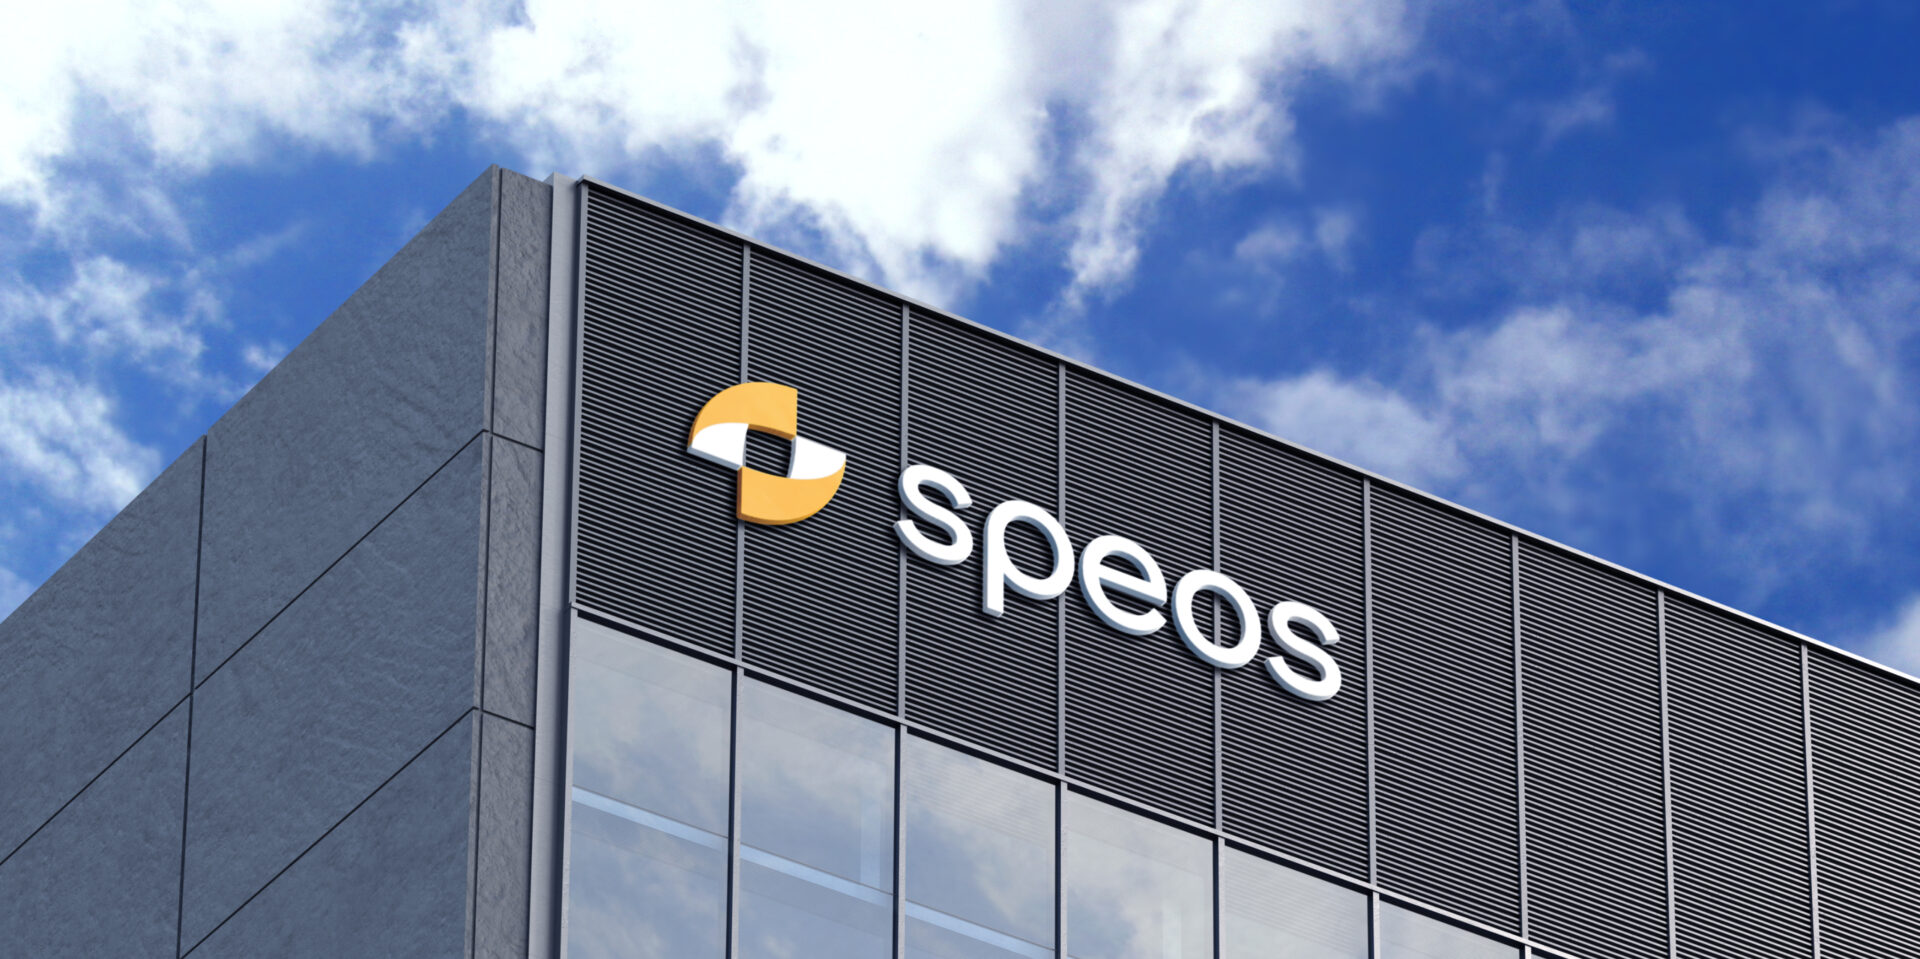 L'enseigne Speos sur le building de l'entreprise, logo réalisé par Atelier Design, agence de communication sur Bruxelles